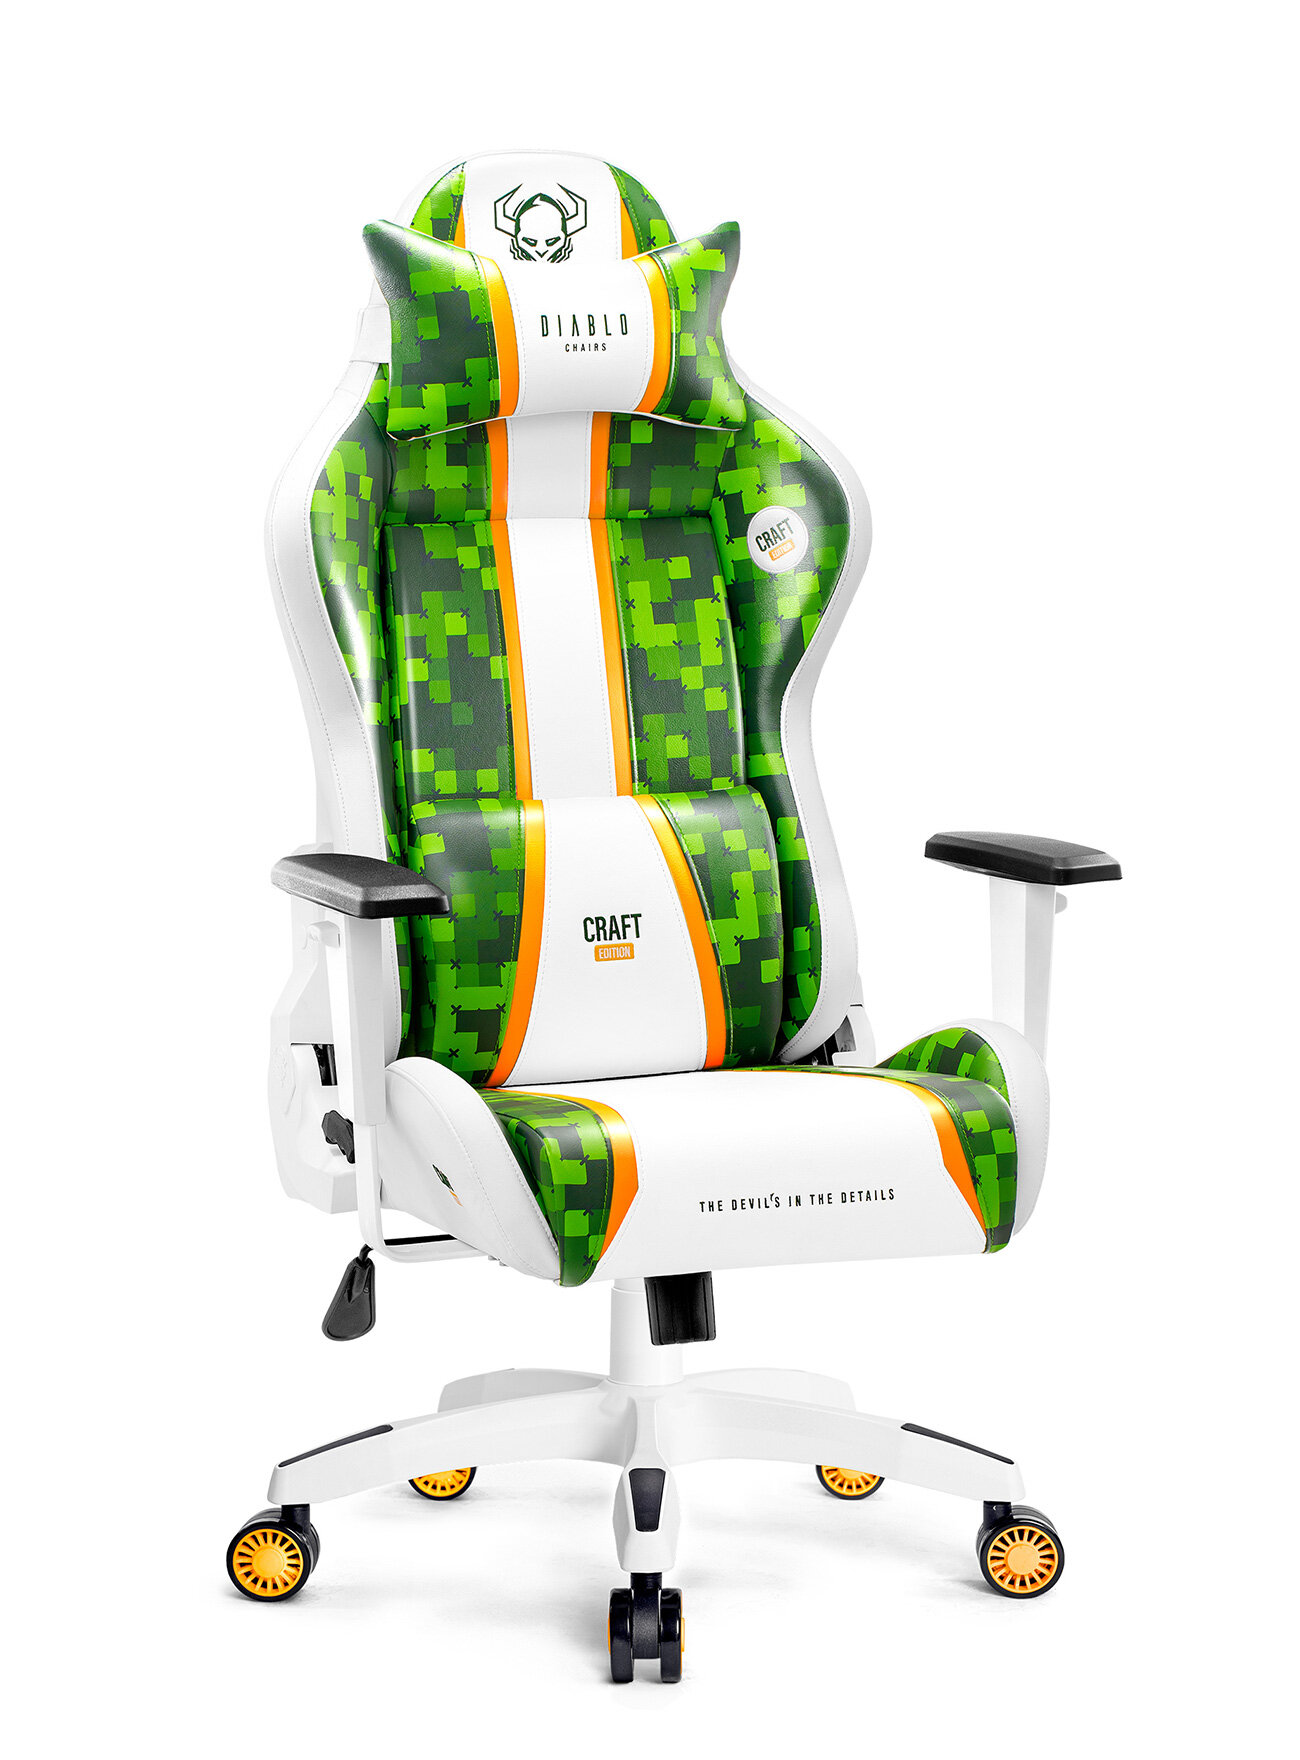 Fotel DIABLO X-ONE Craft (L) Biało-zielony - niskie ceny i opinie w Media  Expert